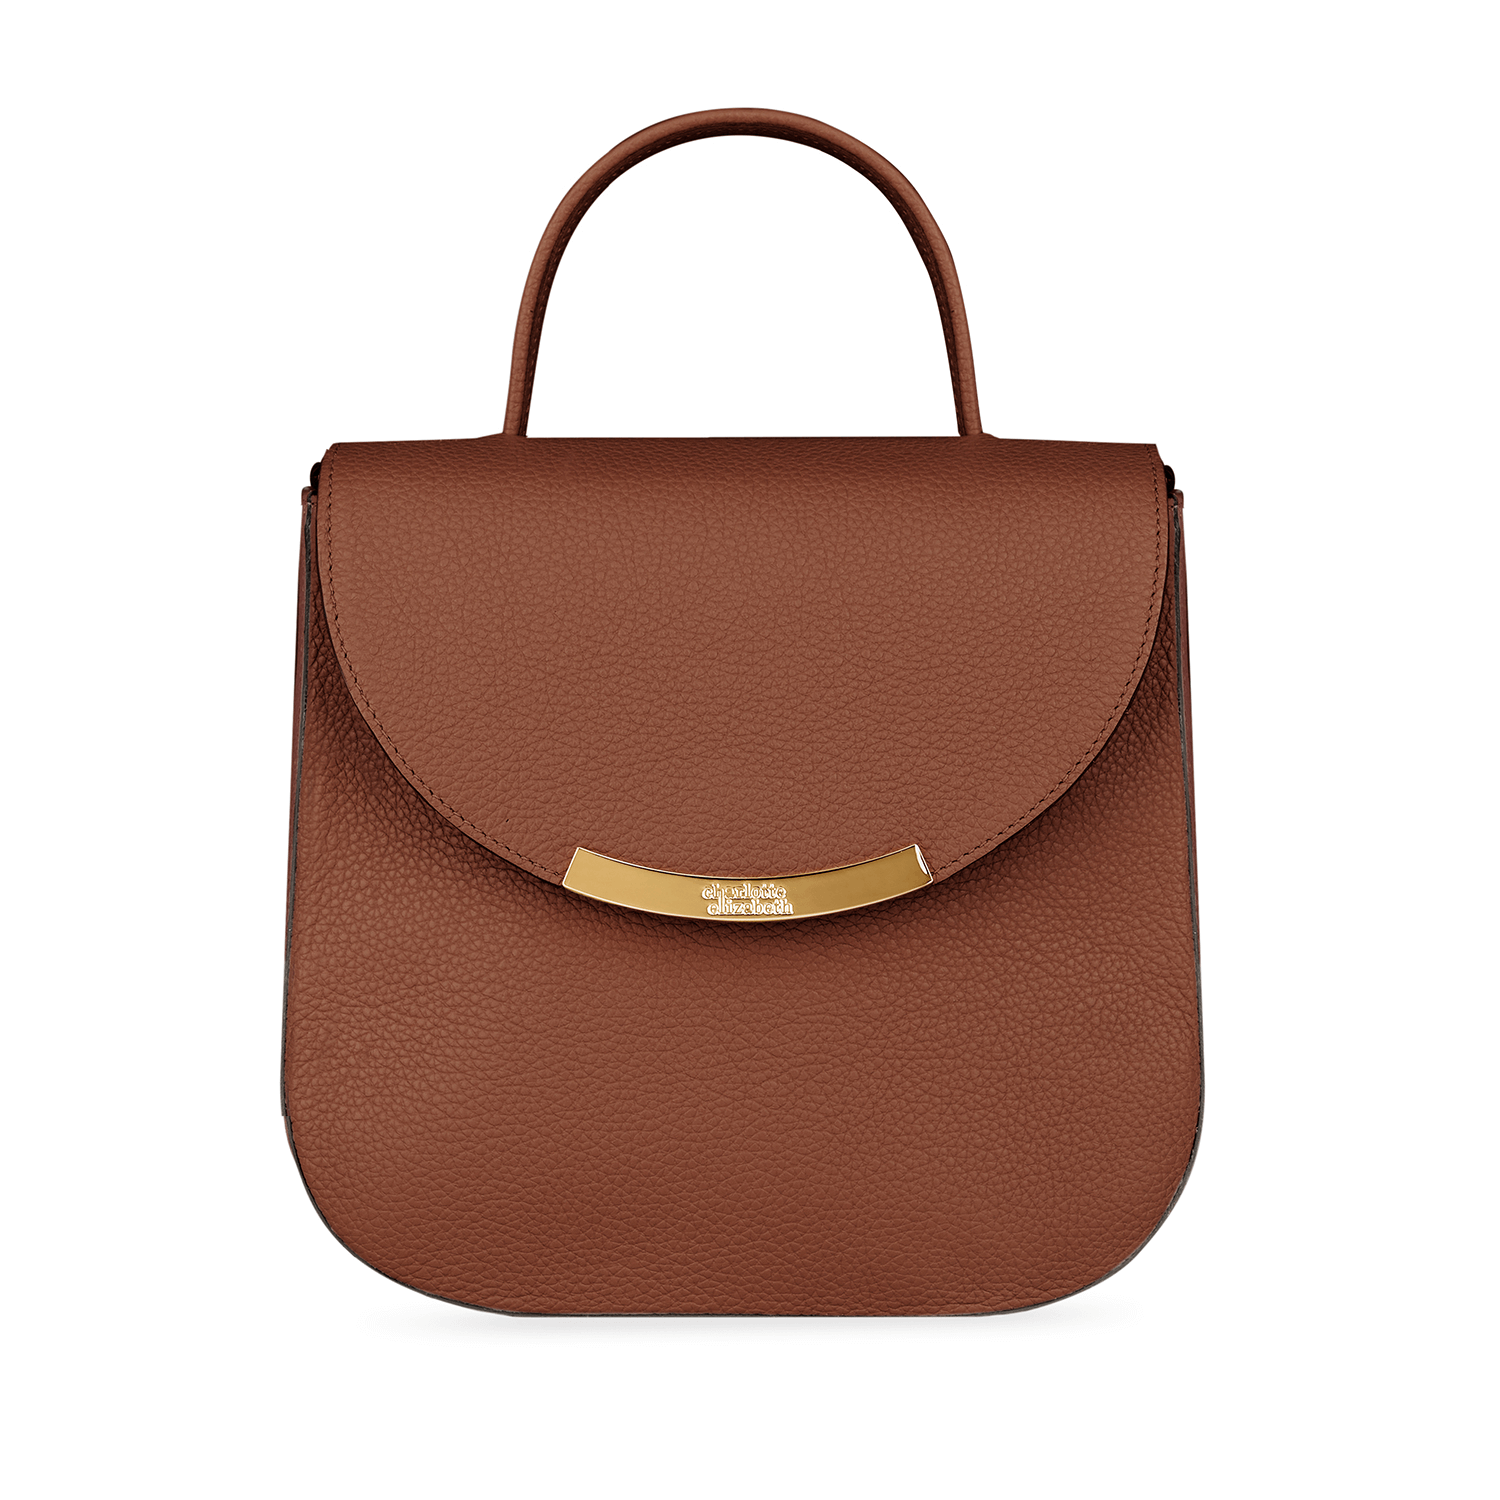 Bloomsbury Top Handle Leather Ladies Handbag Charlotte Elizabeth Meghan Markle